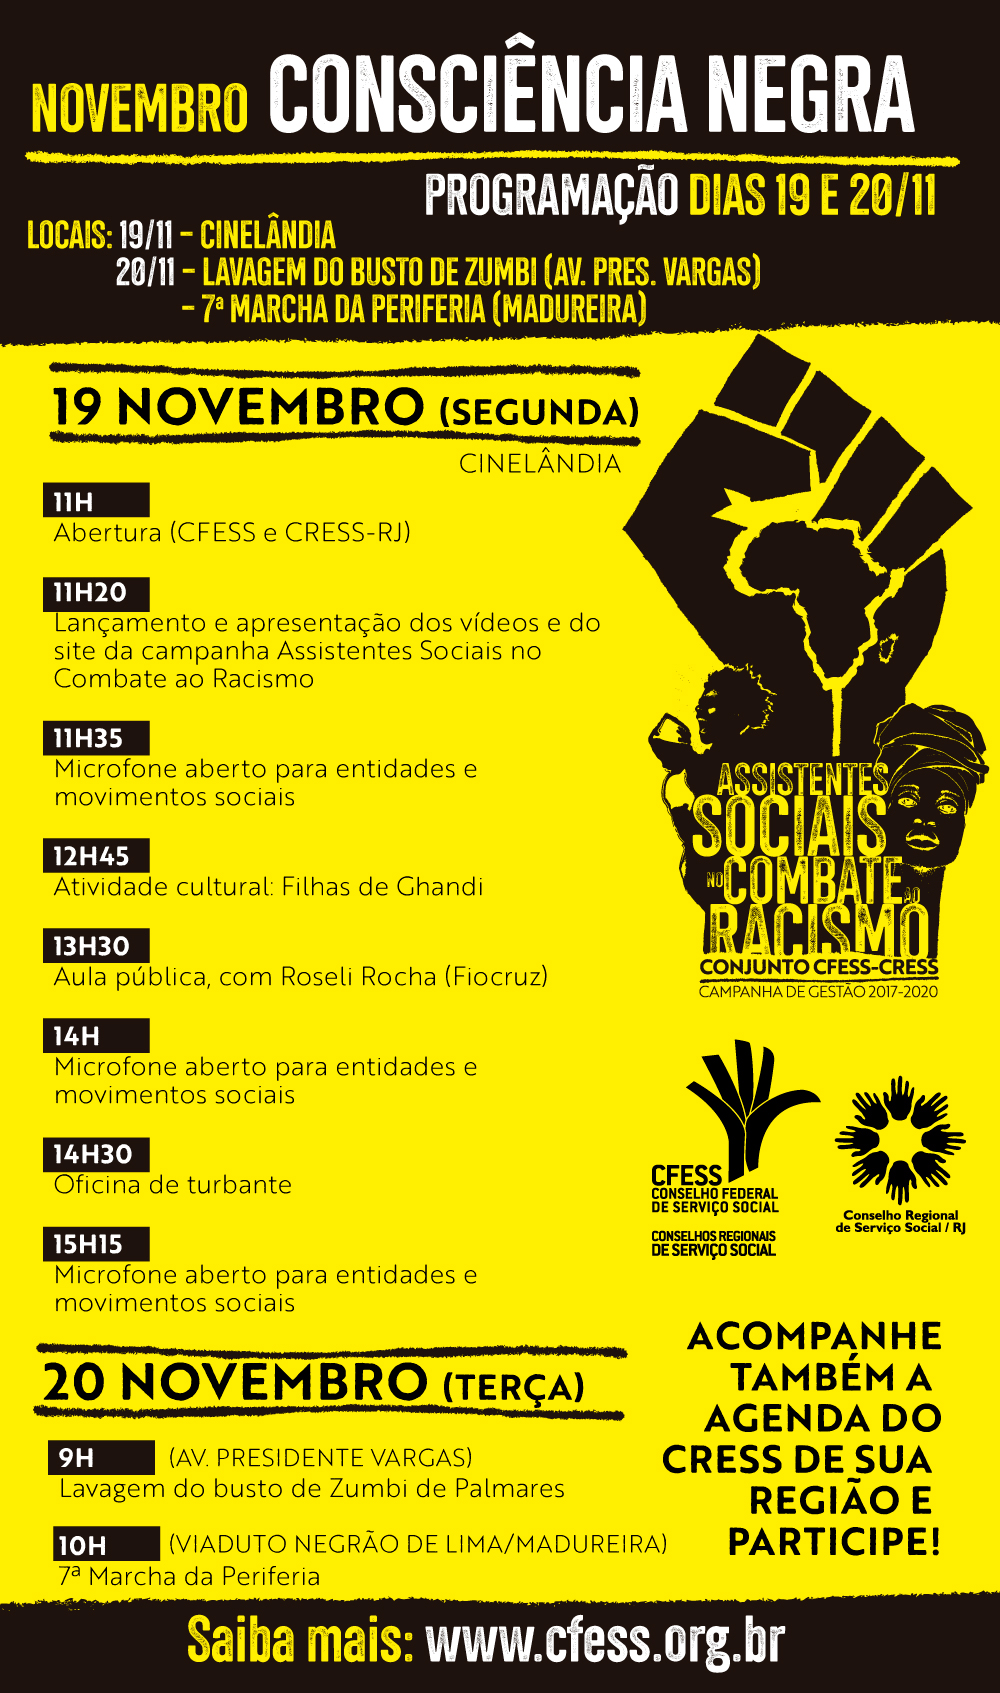 Imagem traz a programação completa dos atos organizados pelo CFSES e CRESS-RJ nos dias 19 e 20 de novembro no Rio de Janeiro